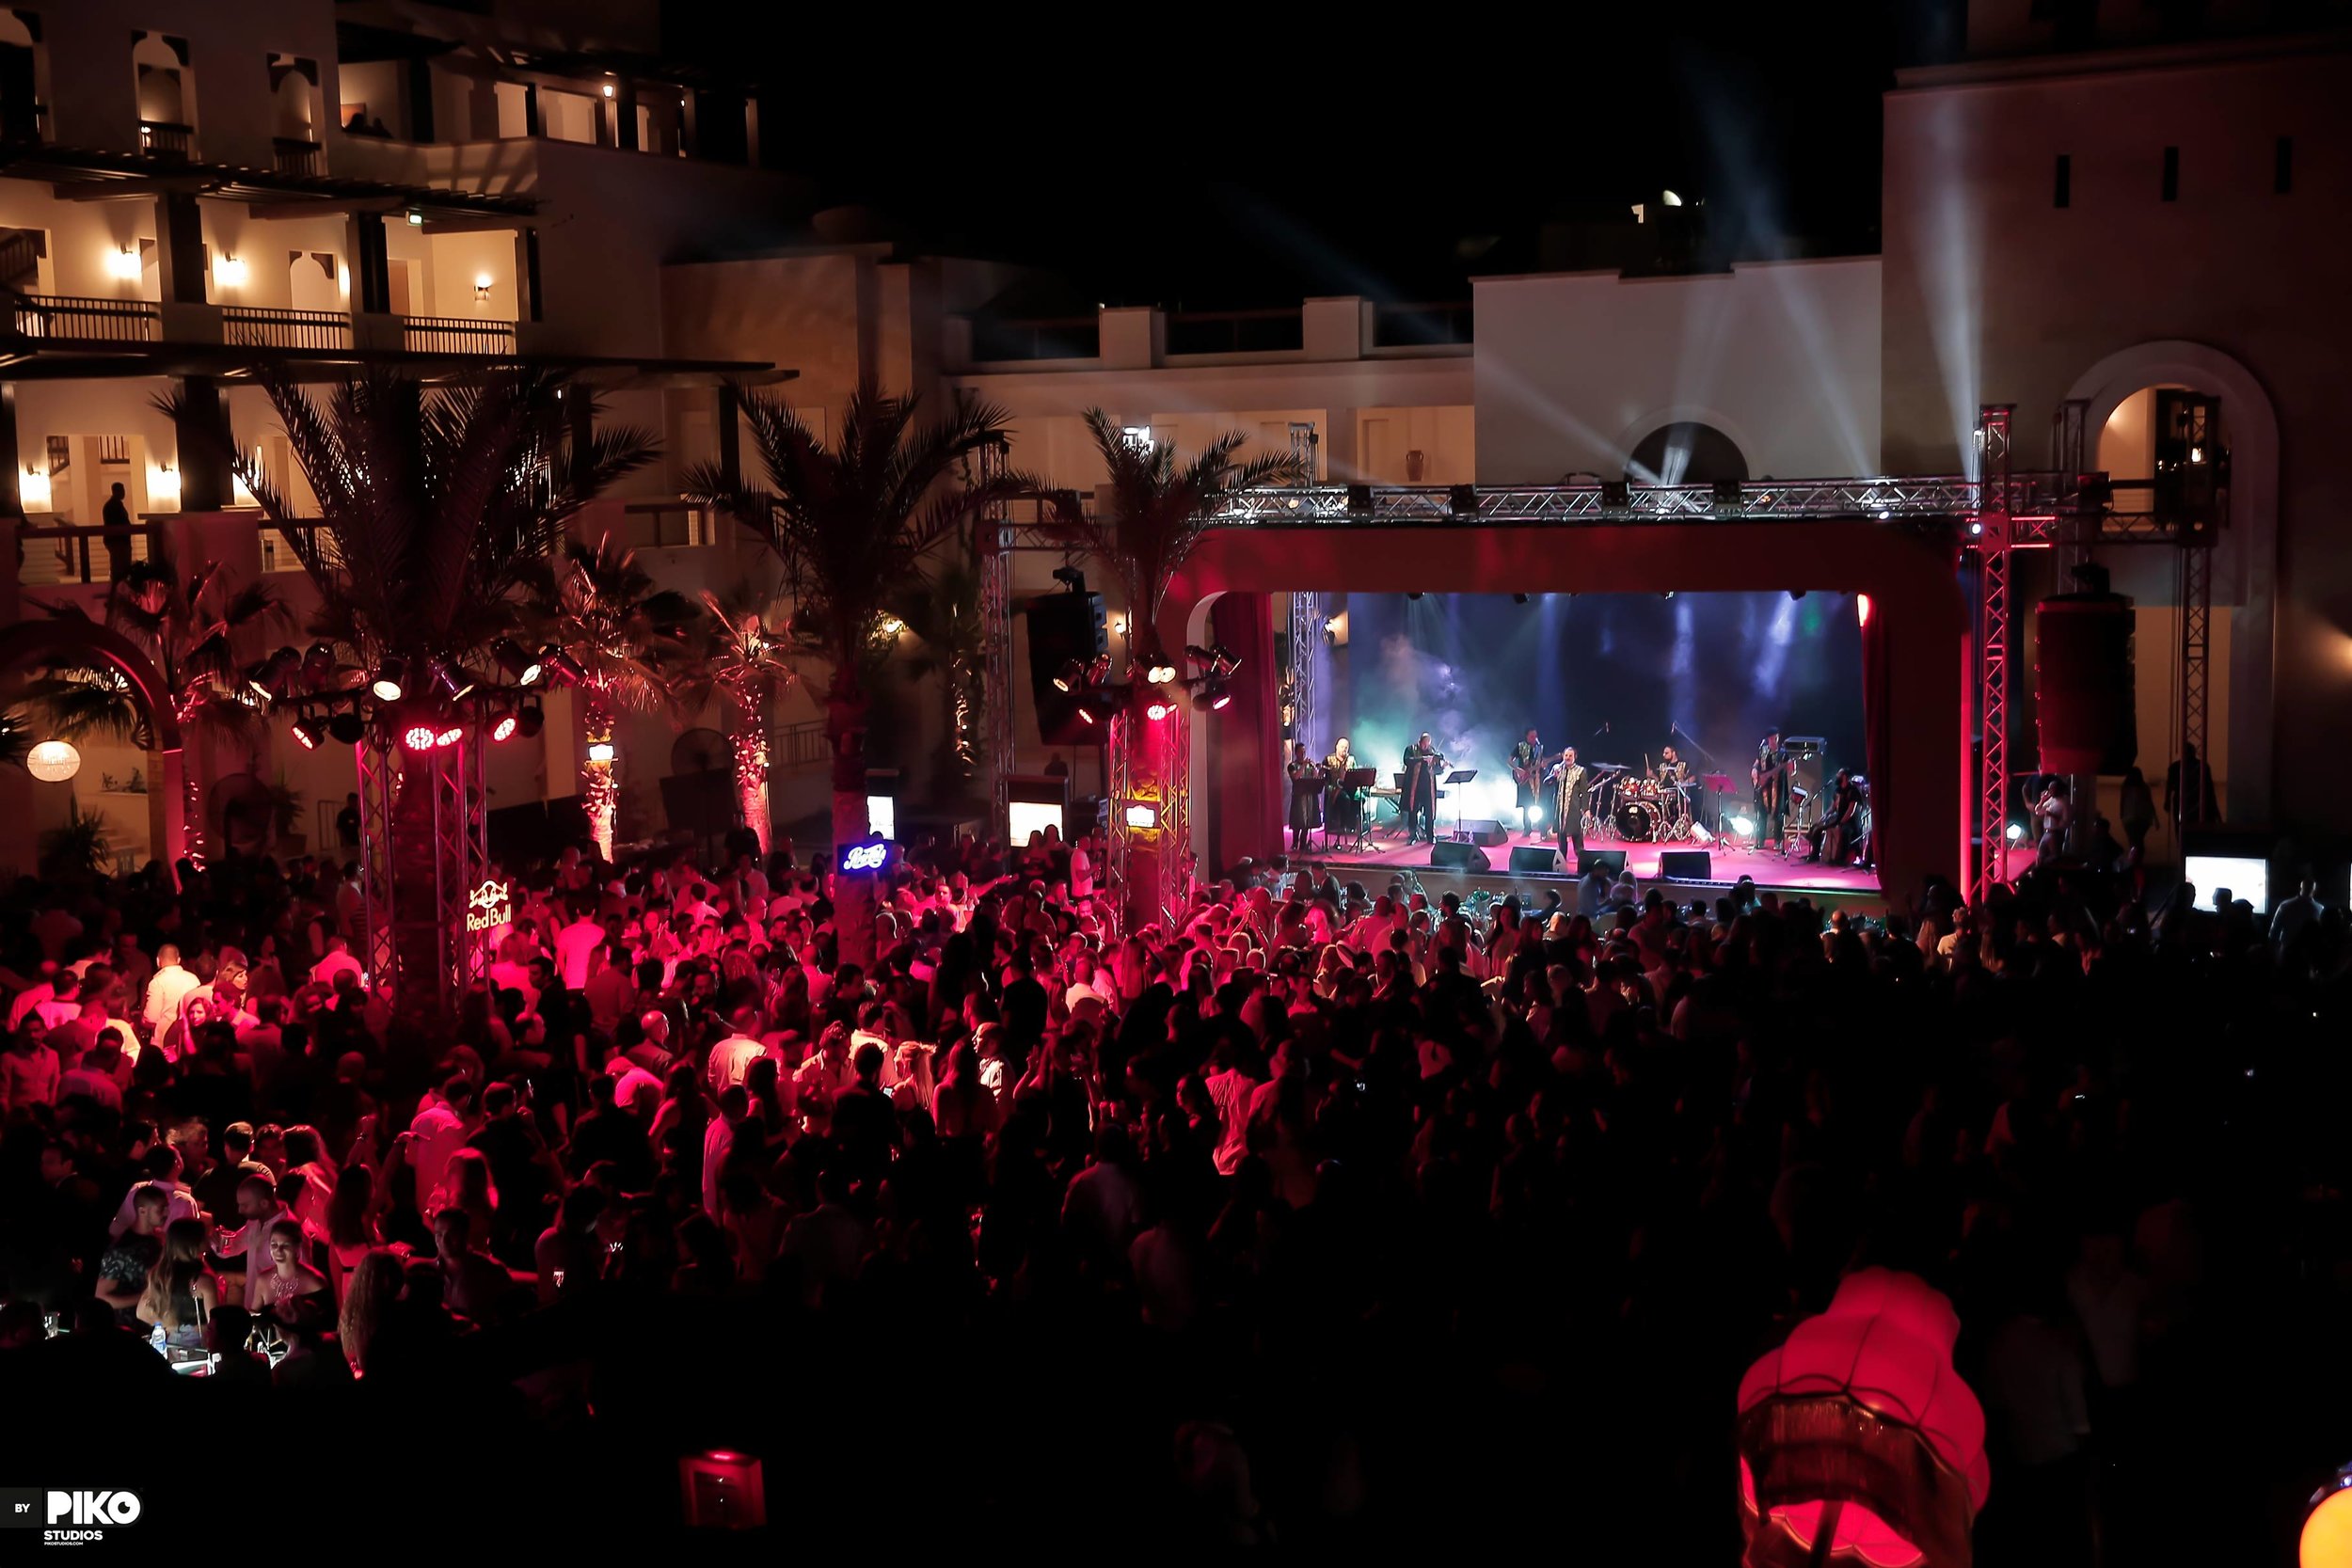  MUSICHALL Tawila Launch El Gouna Orascom Developments Byganz Nightlife in egypt  